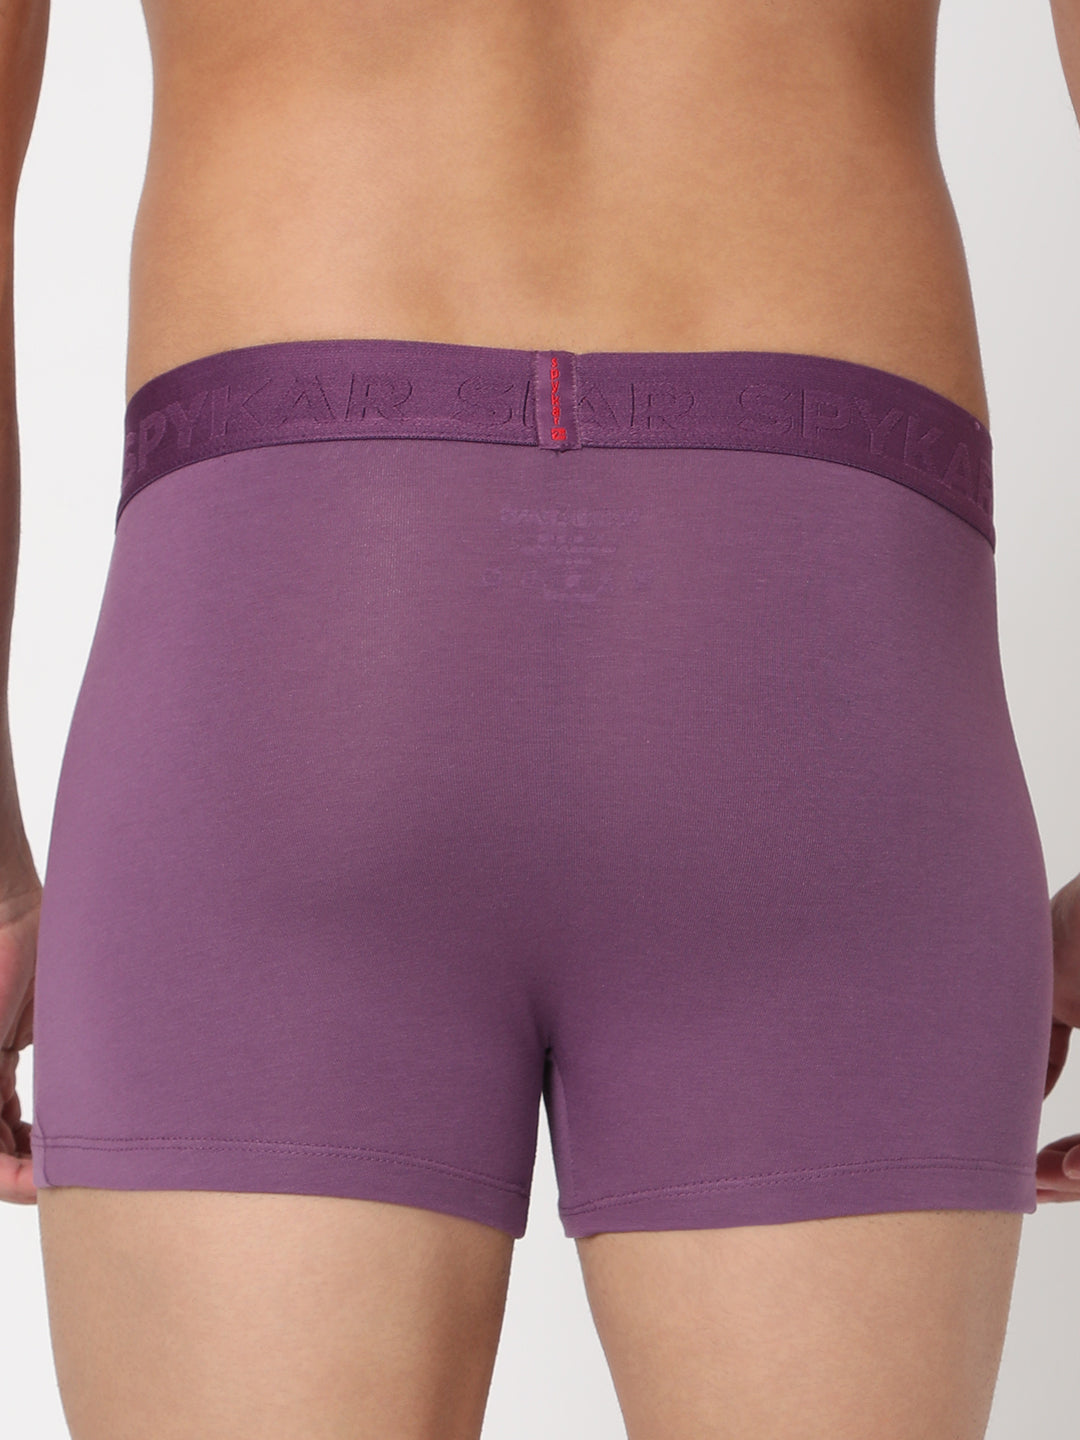 Men Premium Dull Purple Cotton Blend Trunk- UnderJeans by Spykar